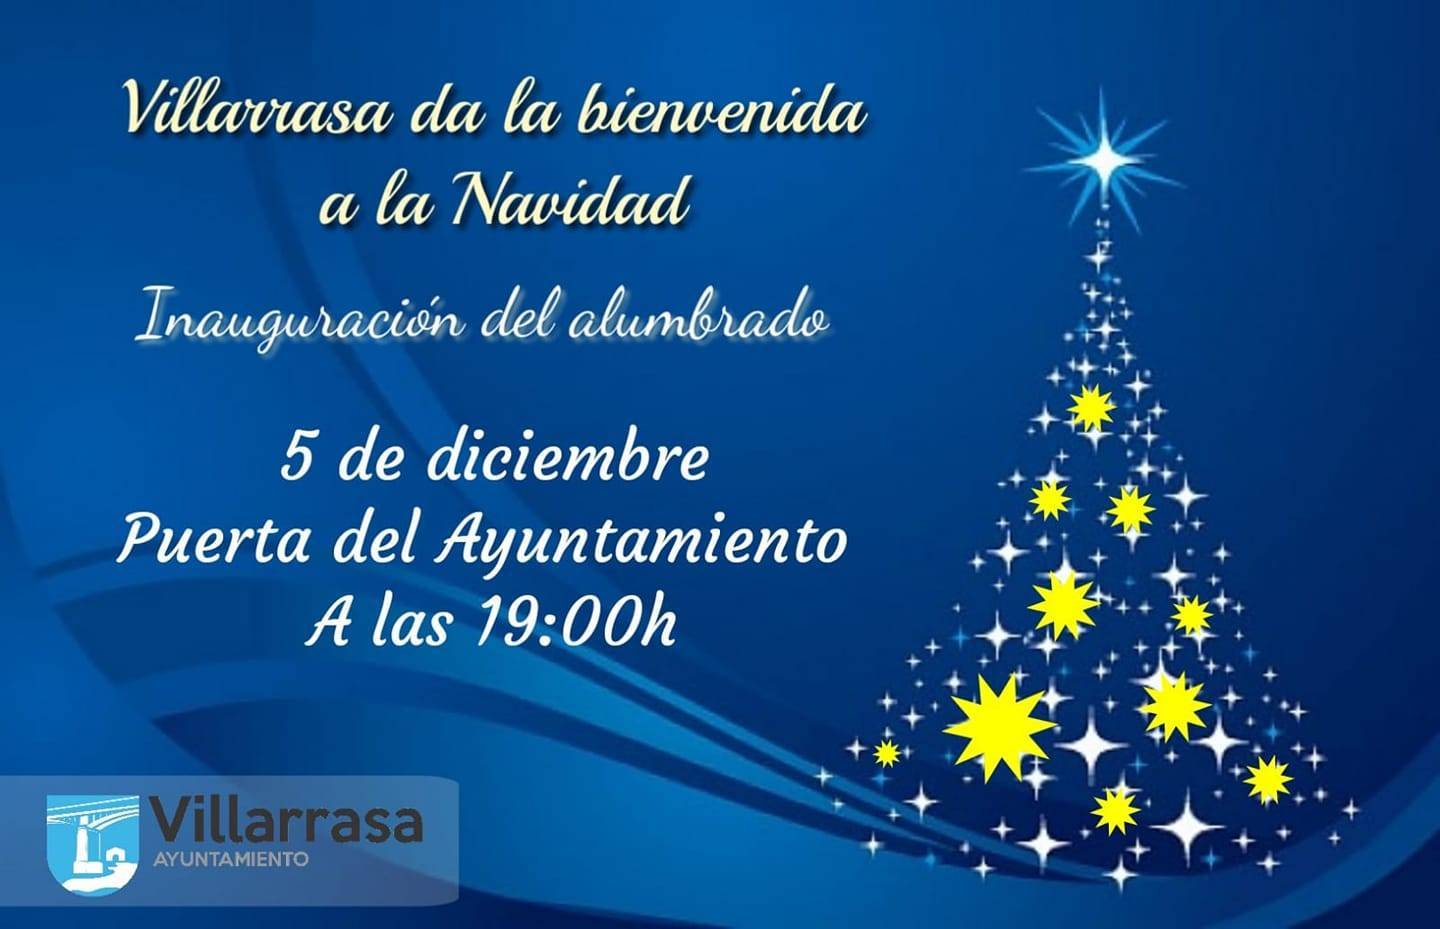 Inauguración del alumbrado de Navidad (2020) - Villarrasa (Huelva)